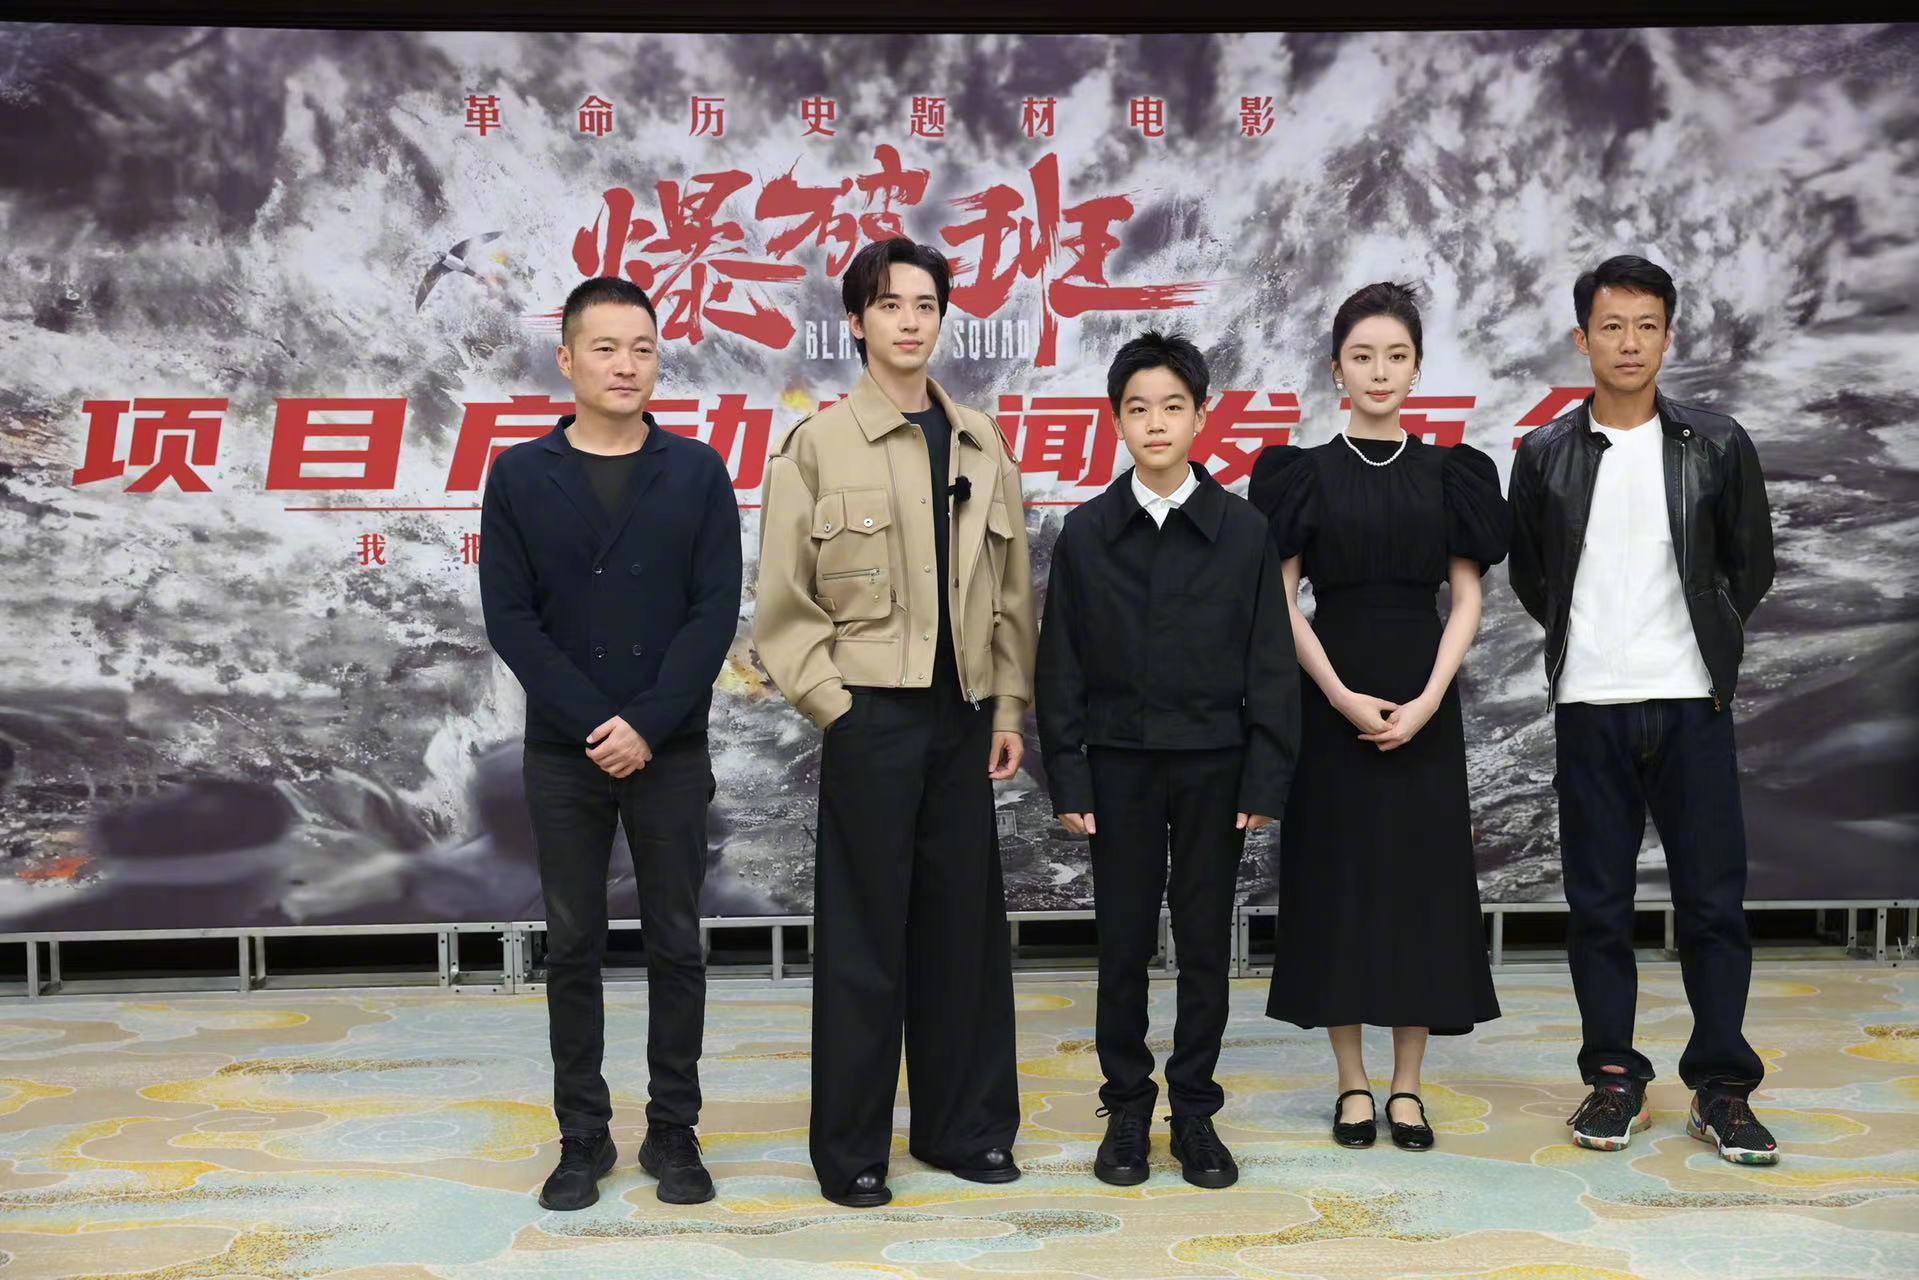 革命历史题材电影《爆破班》今日在北京举行新闻发布会